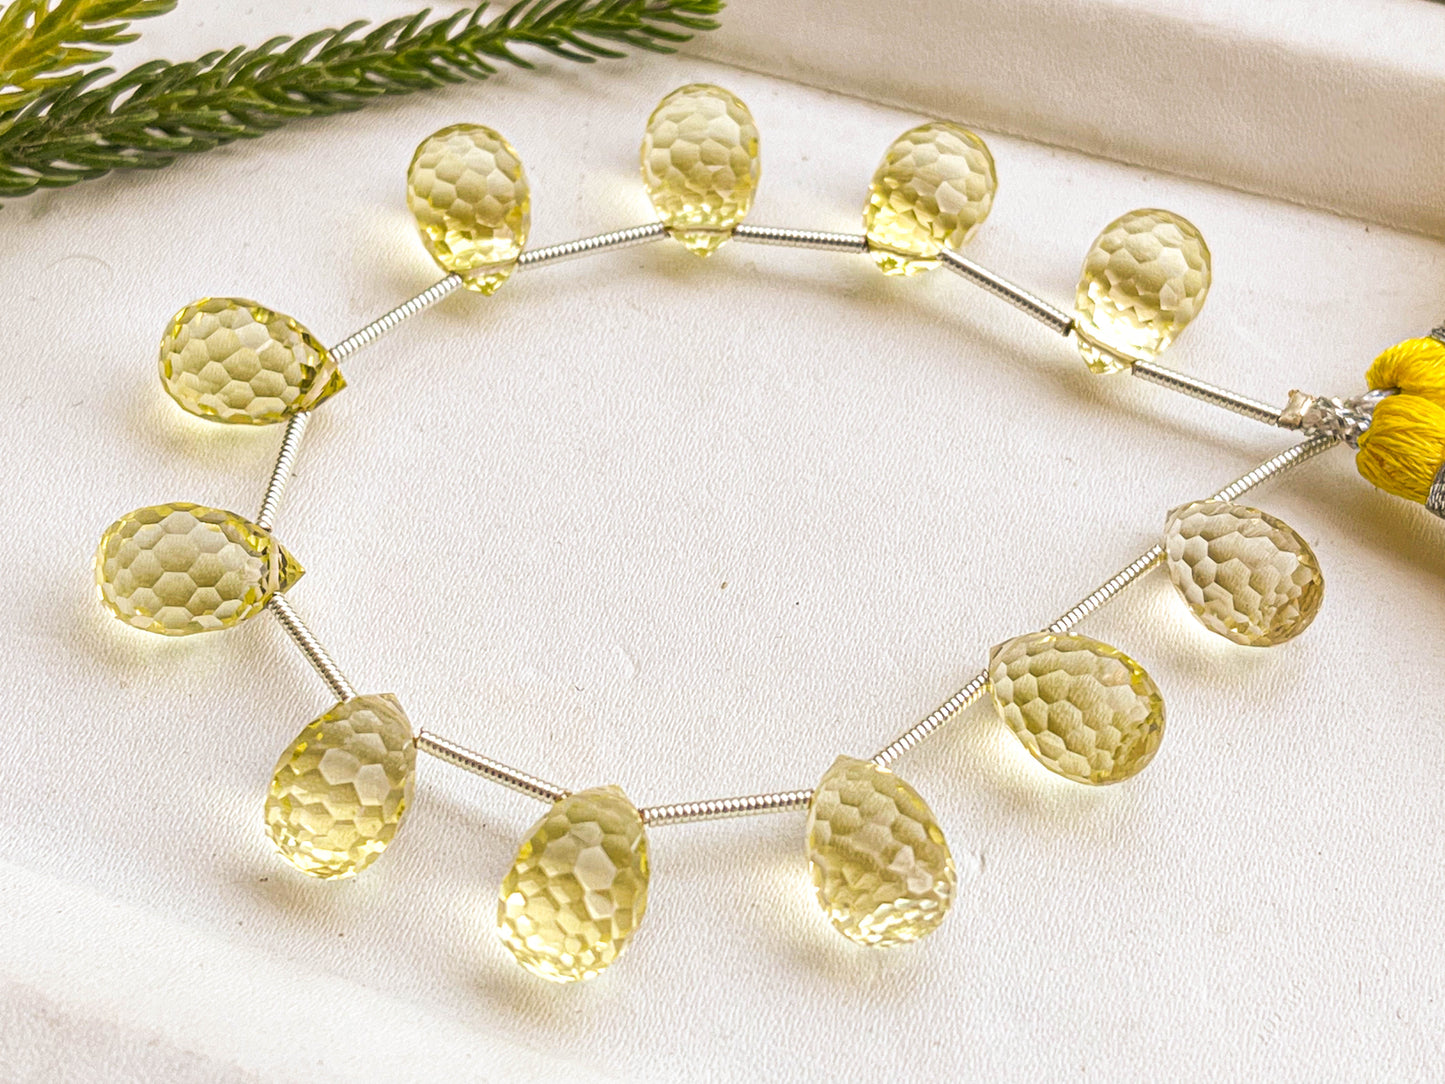 Lemon Quartz Concave Cut Drops Beadsforyourjewelry